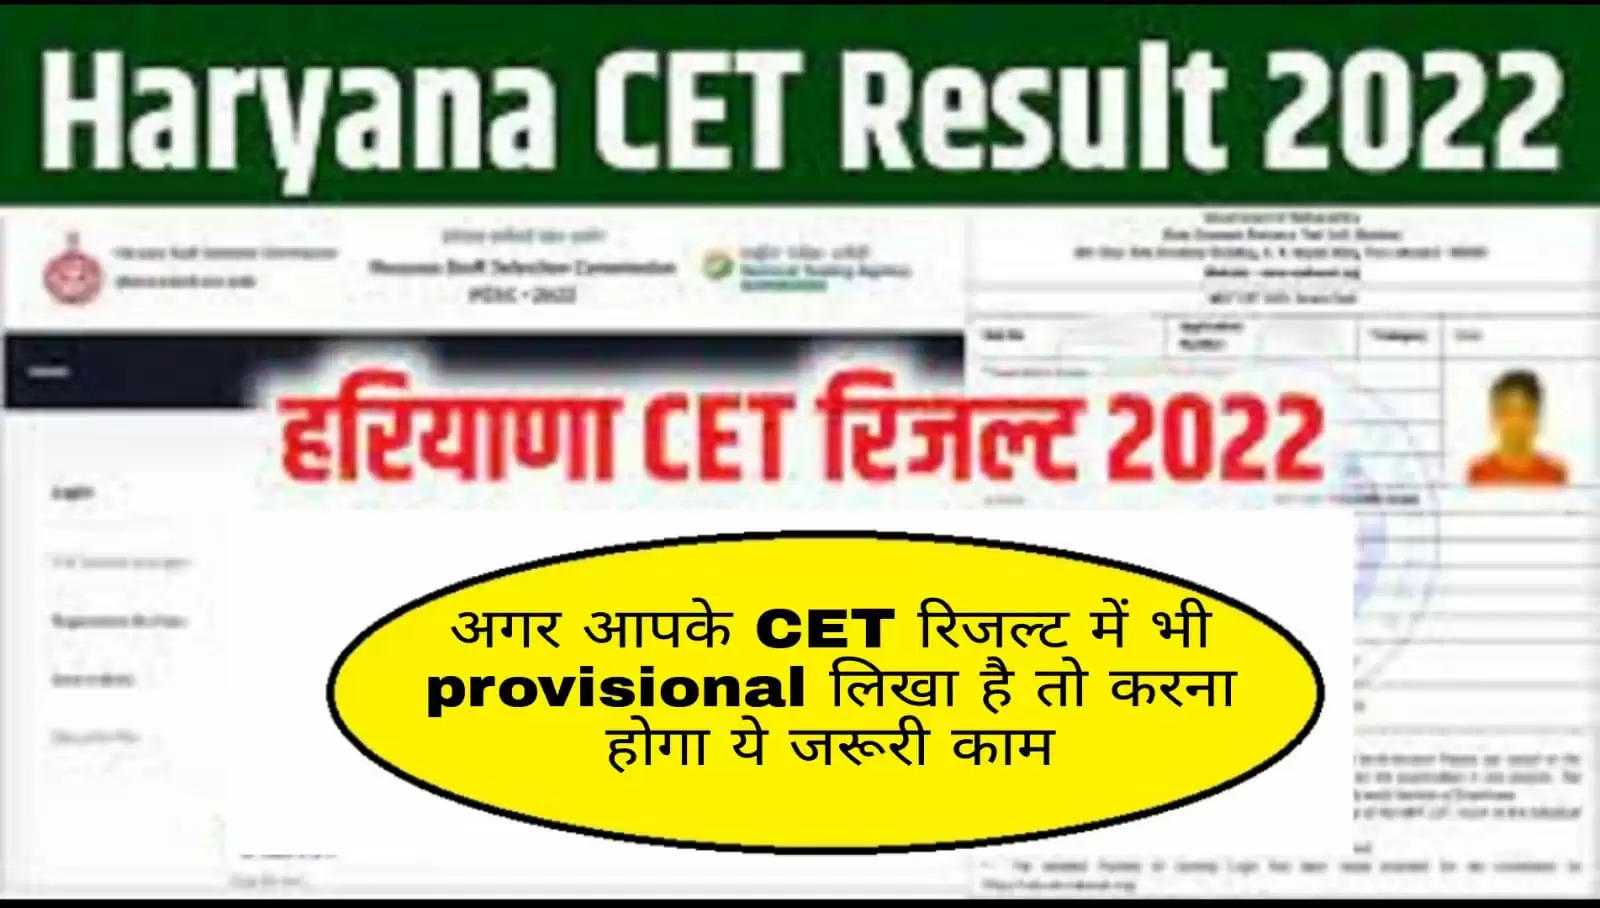 Haryana Cet result : CET रिजल्ट को लेकर बड़ी खबर, सभी अभ्यर्थियों को करना होगा ये जरुरी काम, फटाफट जाने पूरी डिटेल्स